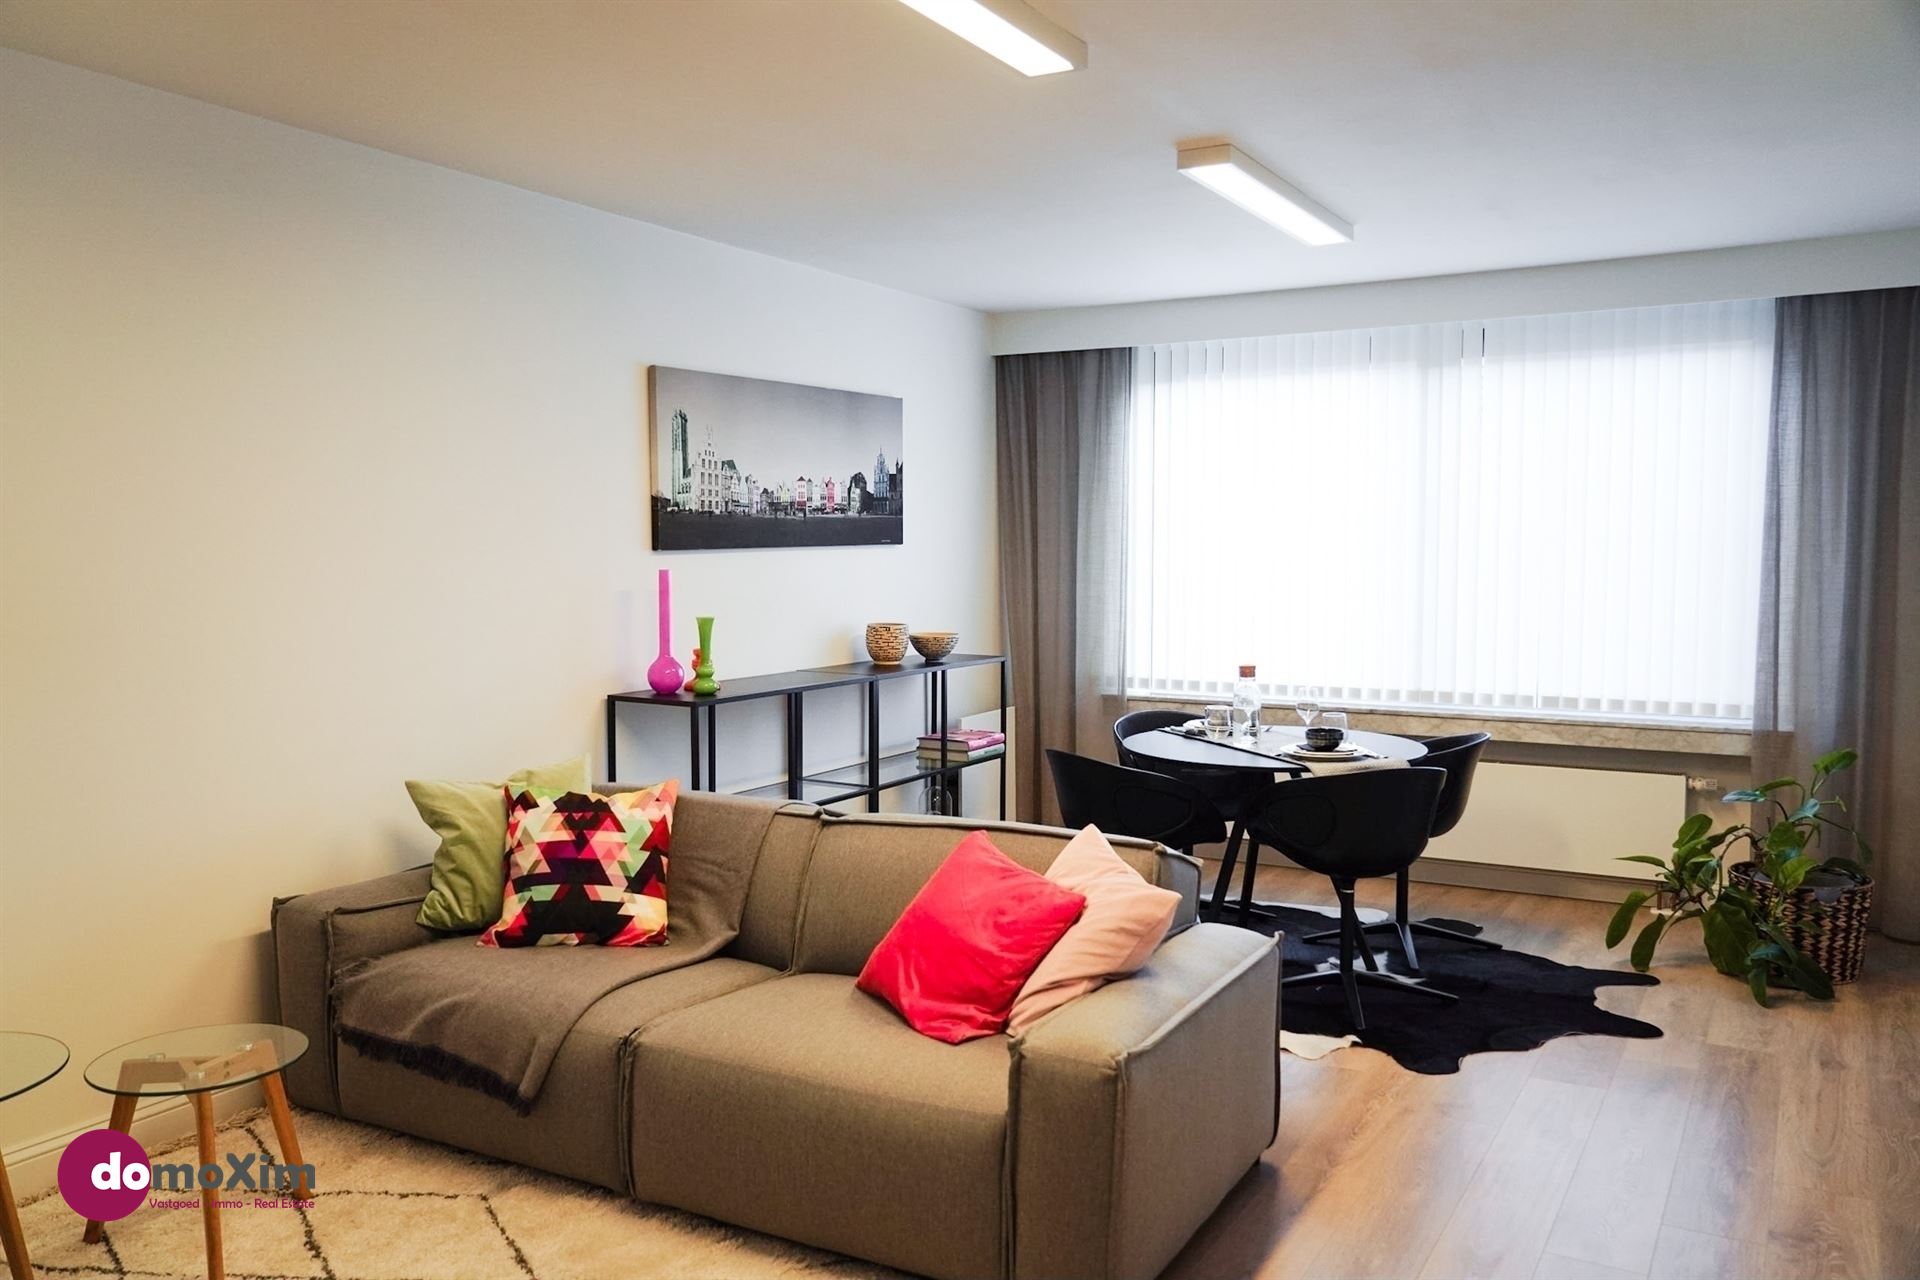 Prachtig gemeubeld appartement met 1 slaapkamer in het centrum van Mechelen foto 1